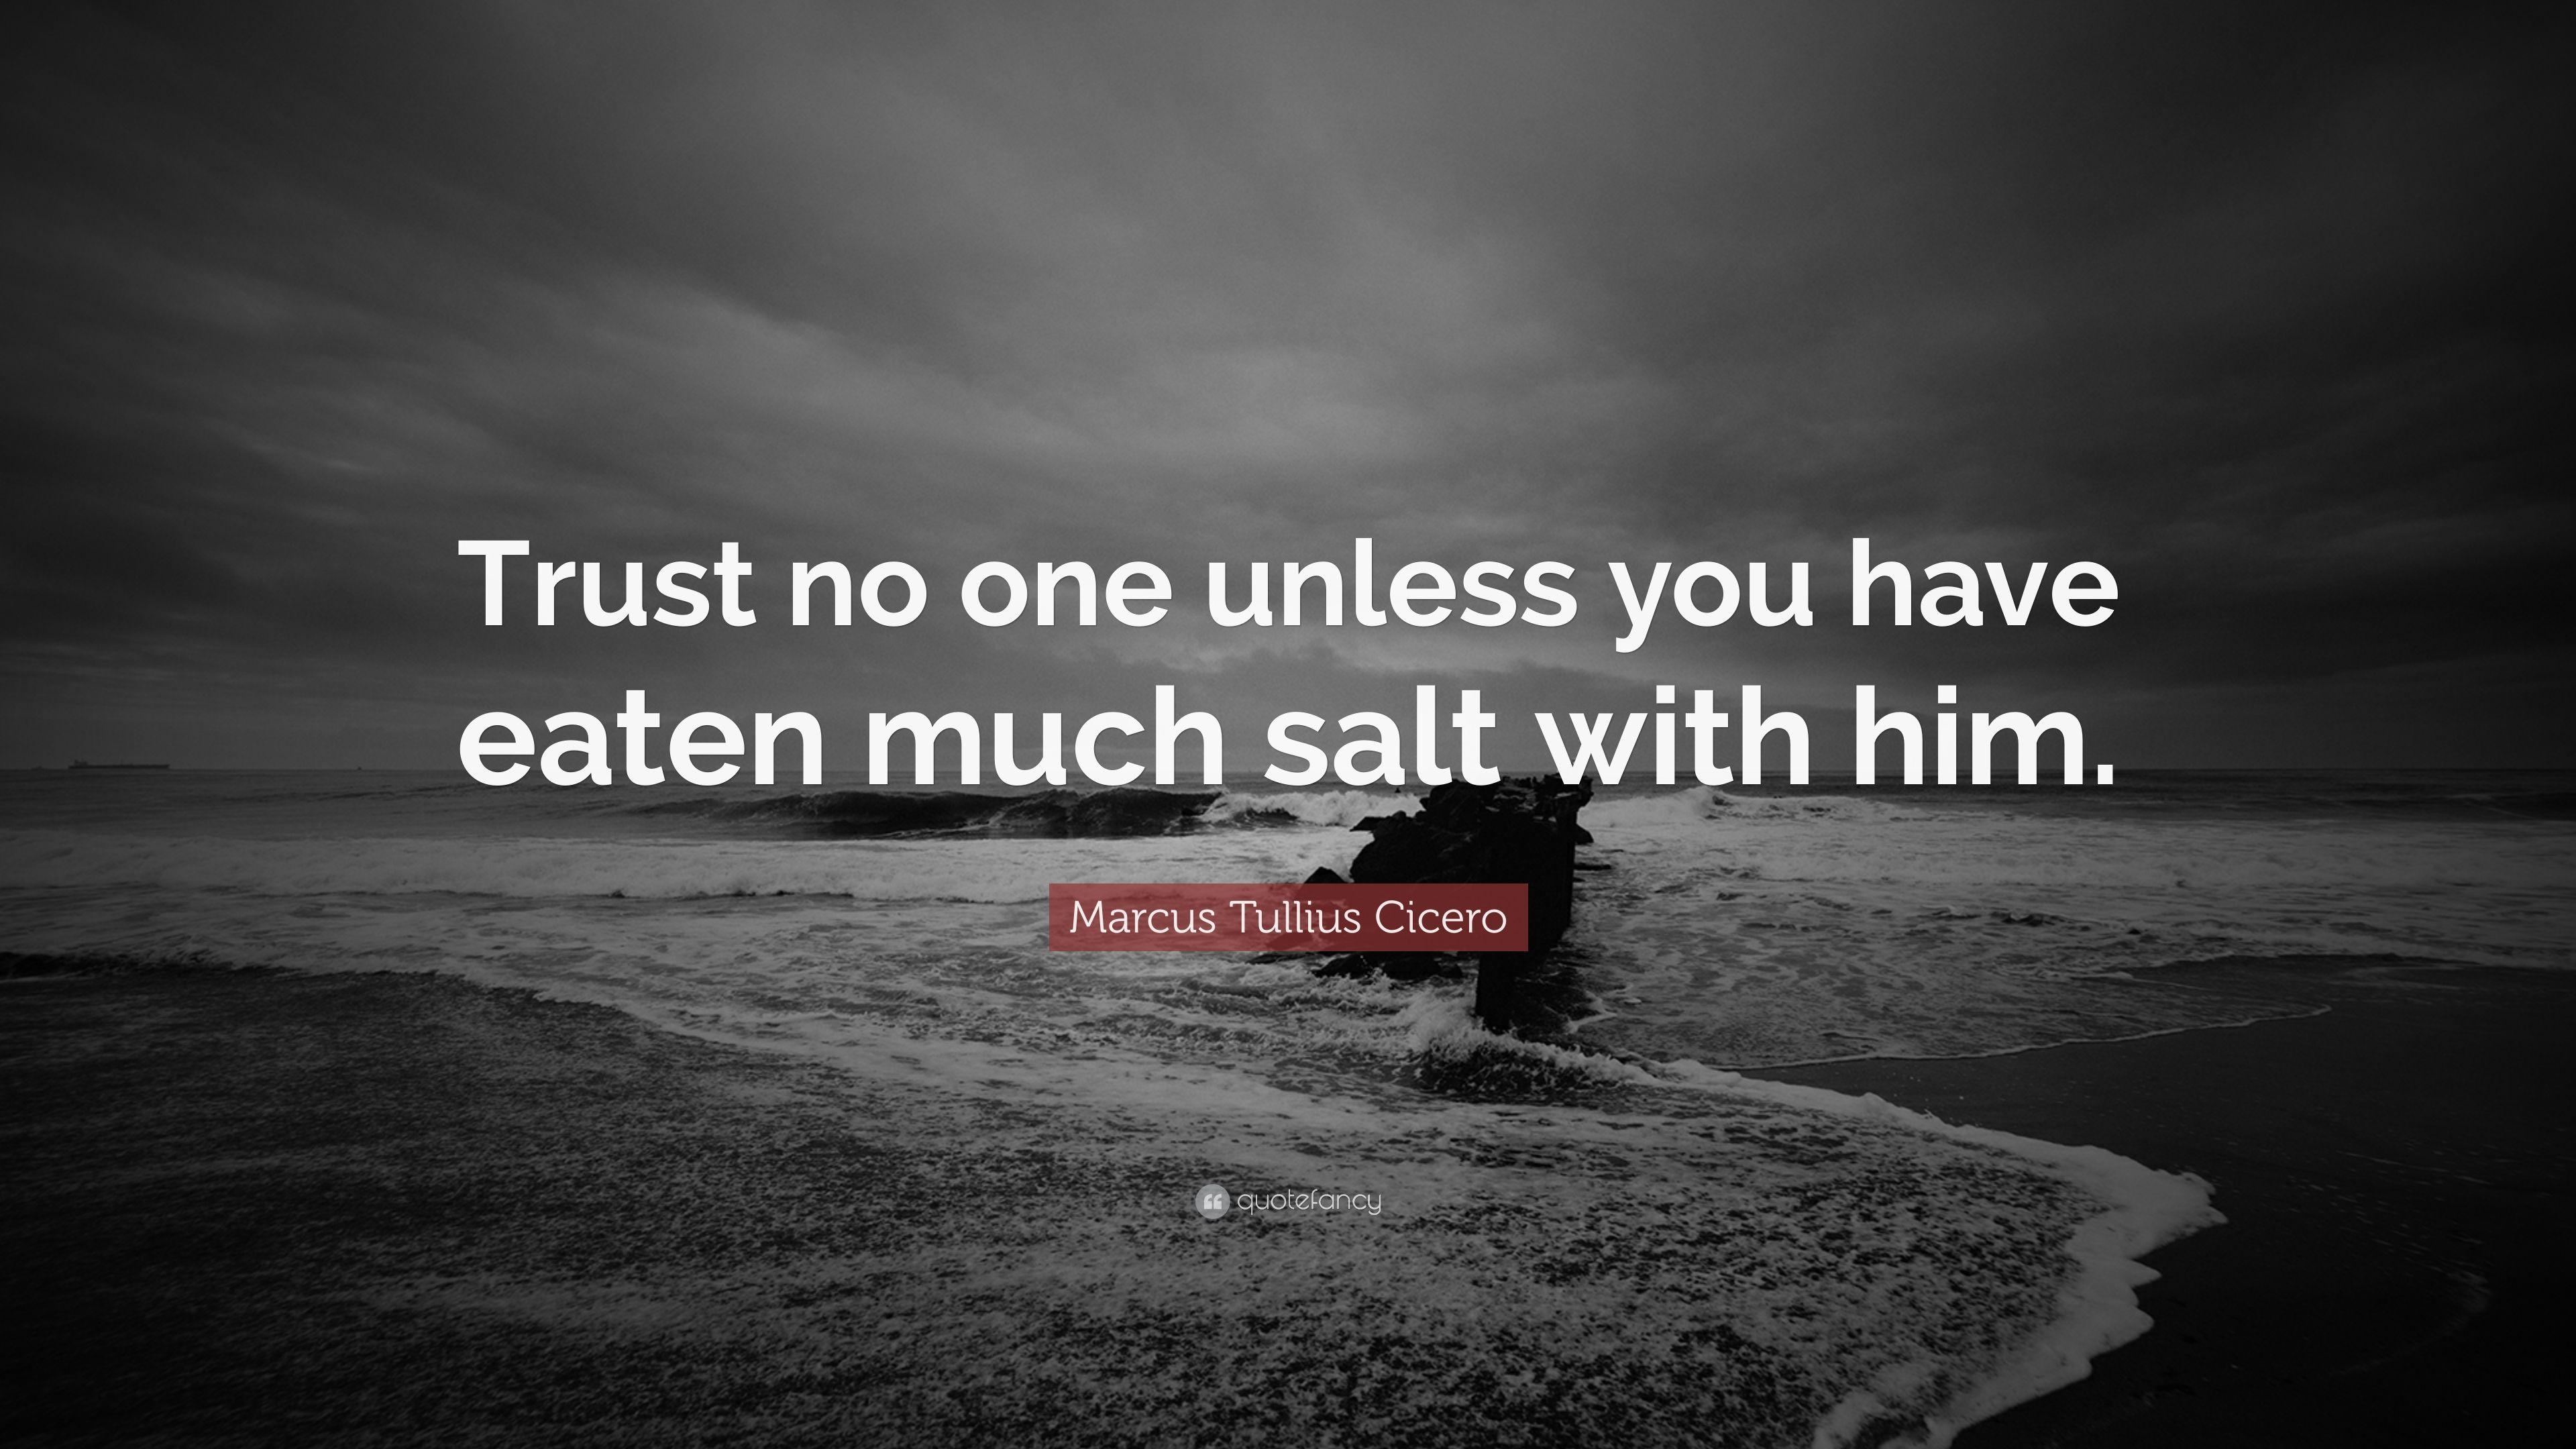 Marcus Tullius Cicero Quote: “Trust no one unless you have eaten